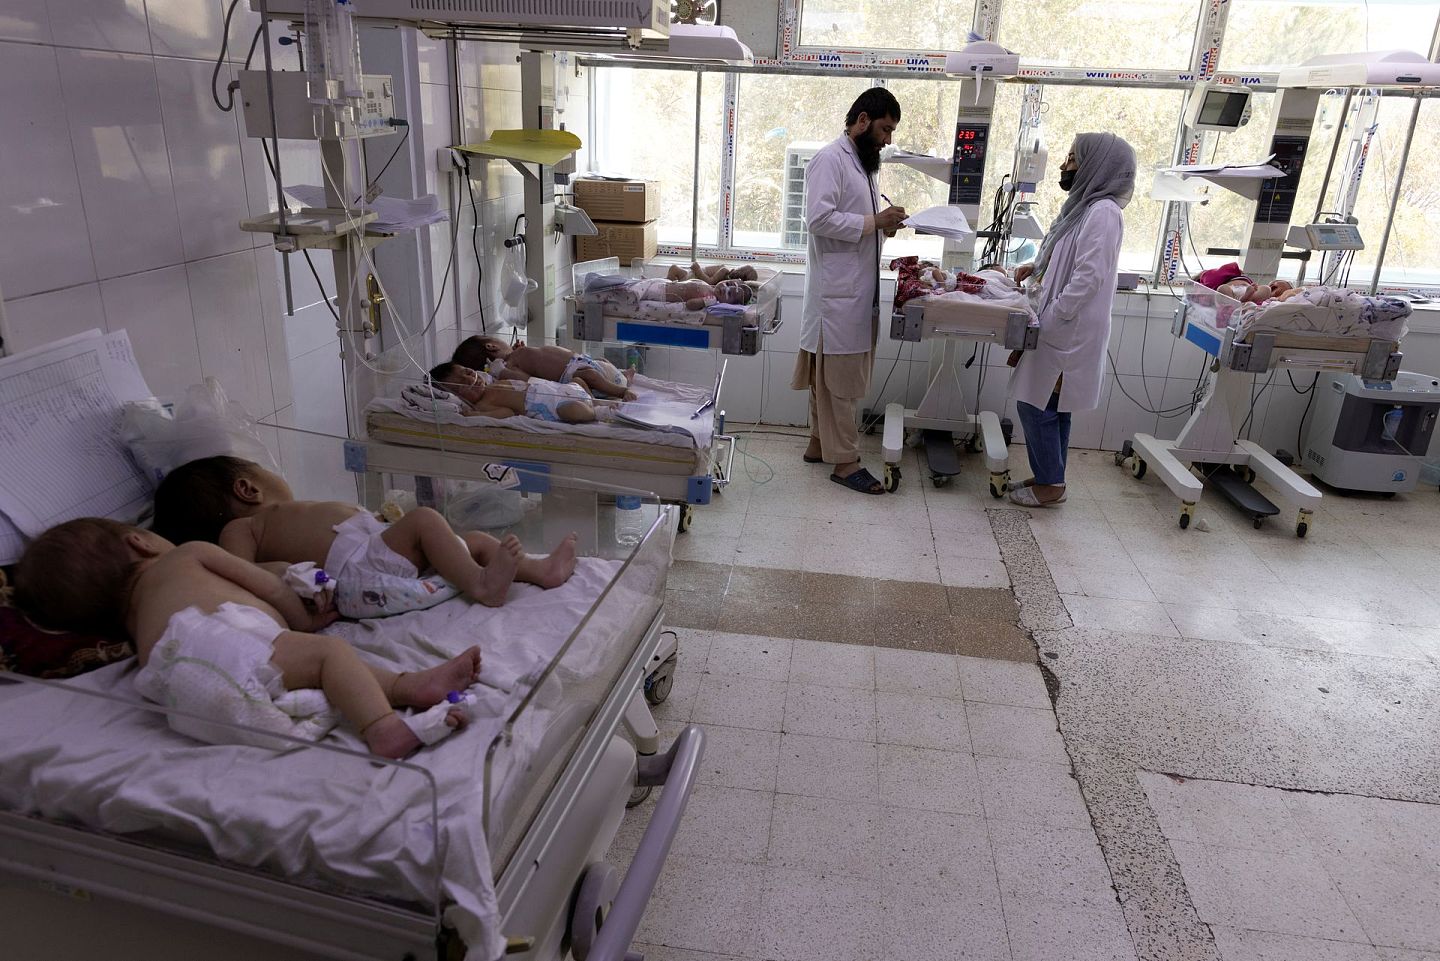 依赖于国际援助的医生、护士亦处境艰难。(Reuters)